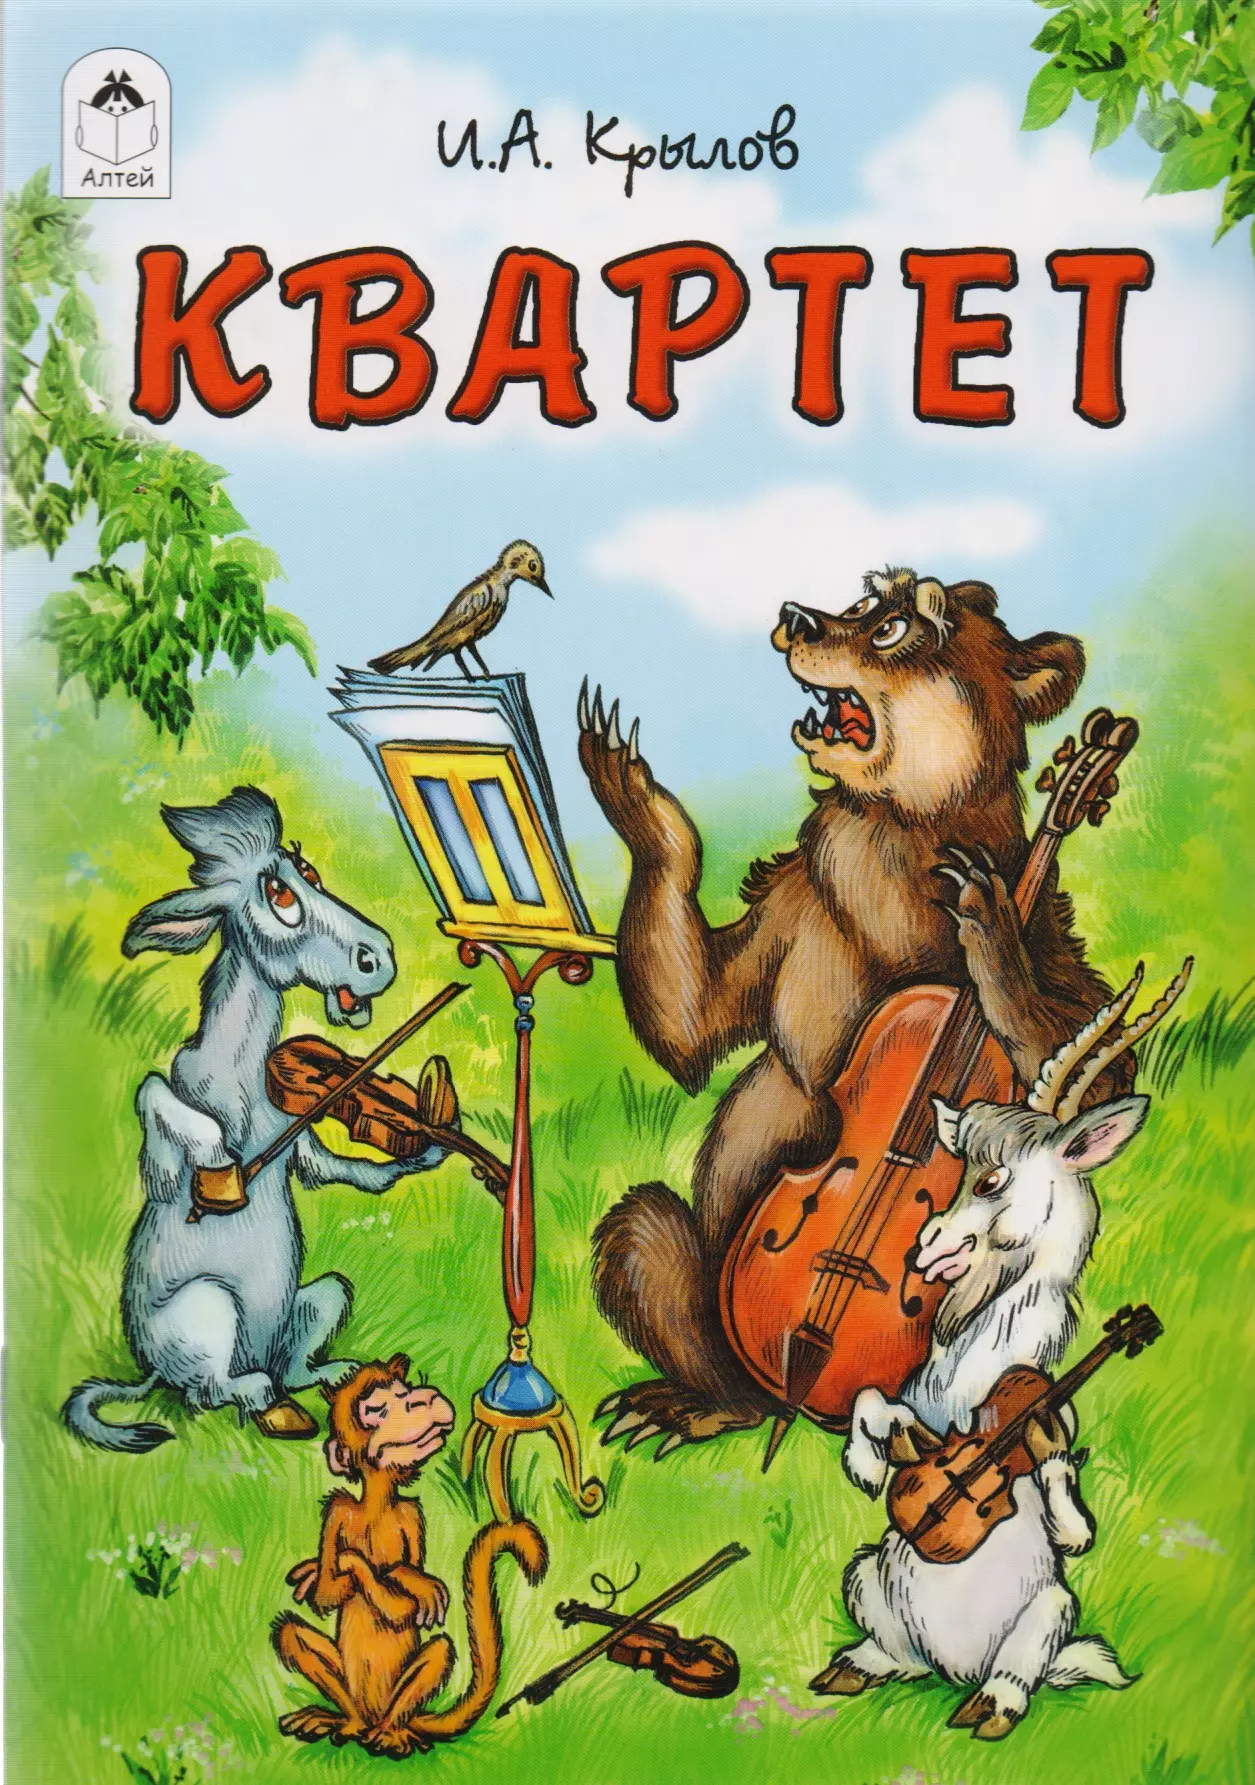 Книга квартет Андреевича Крылова